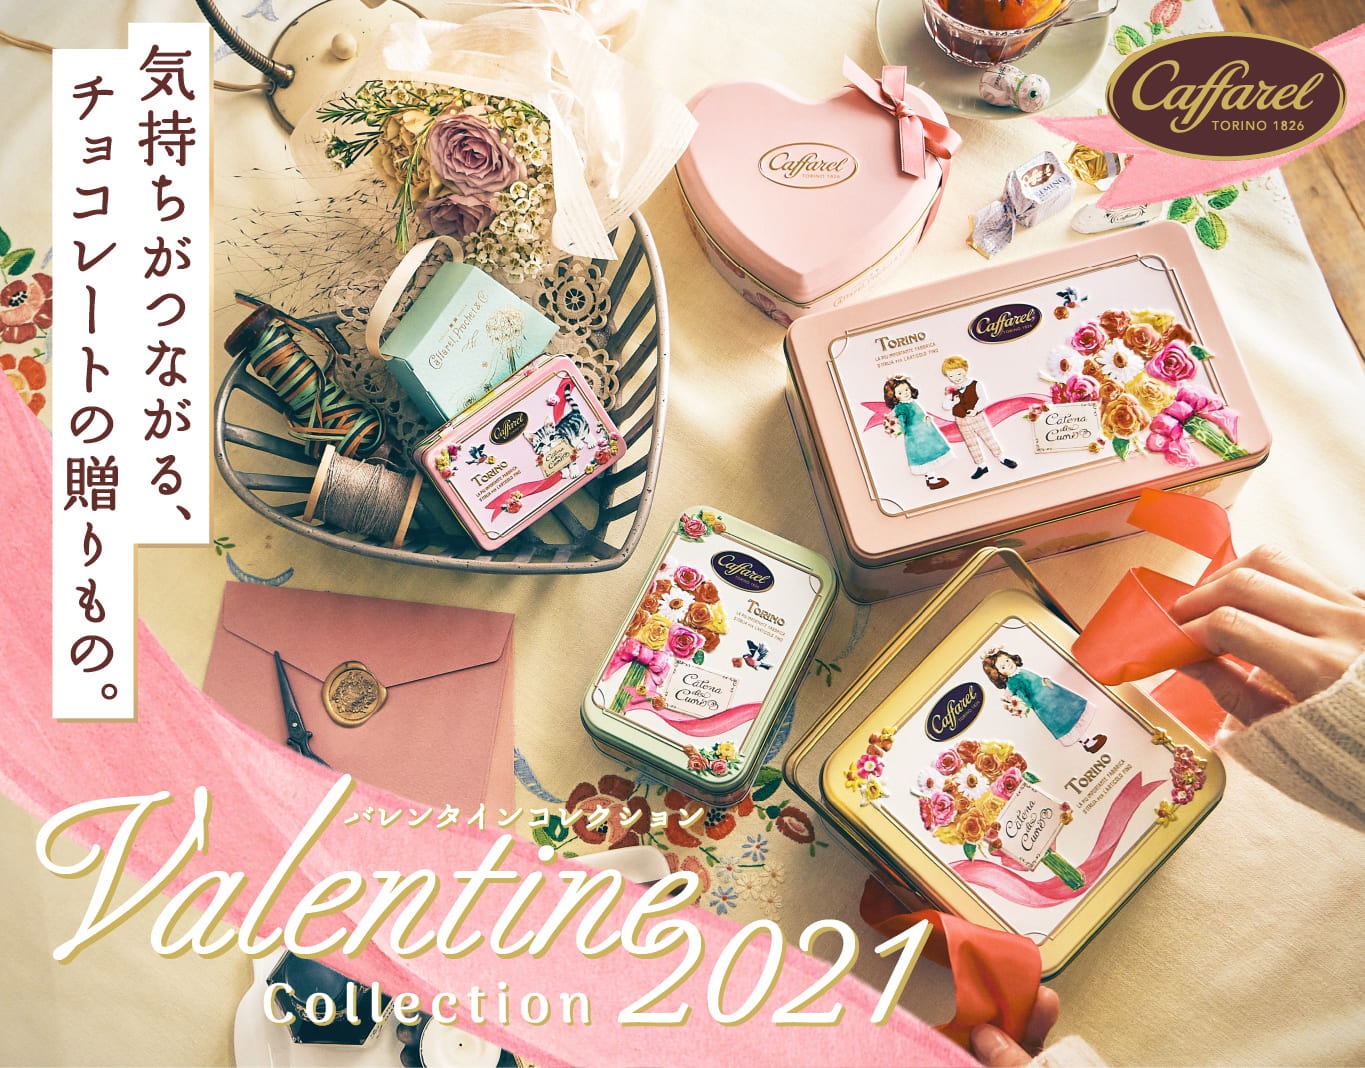 21バレンタインチョコレート 公式通販カファレル Caffarel イタリア